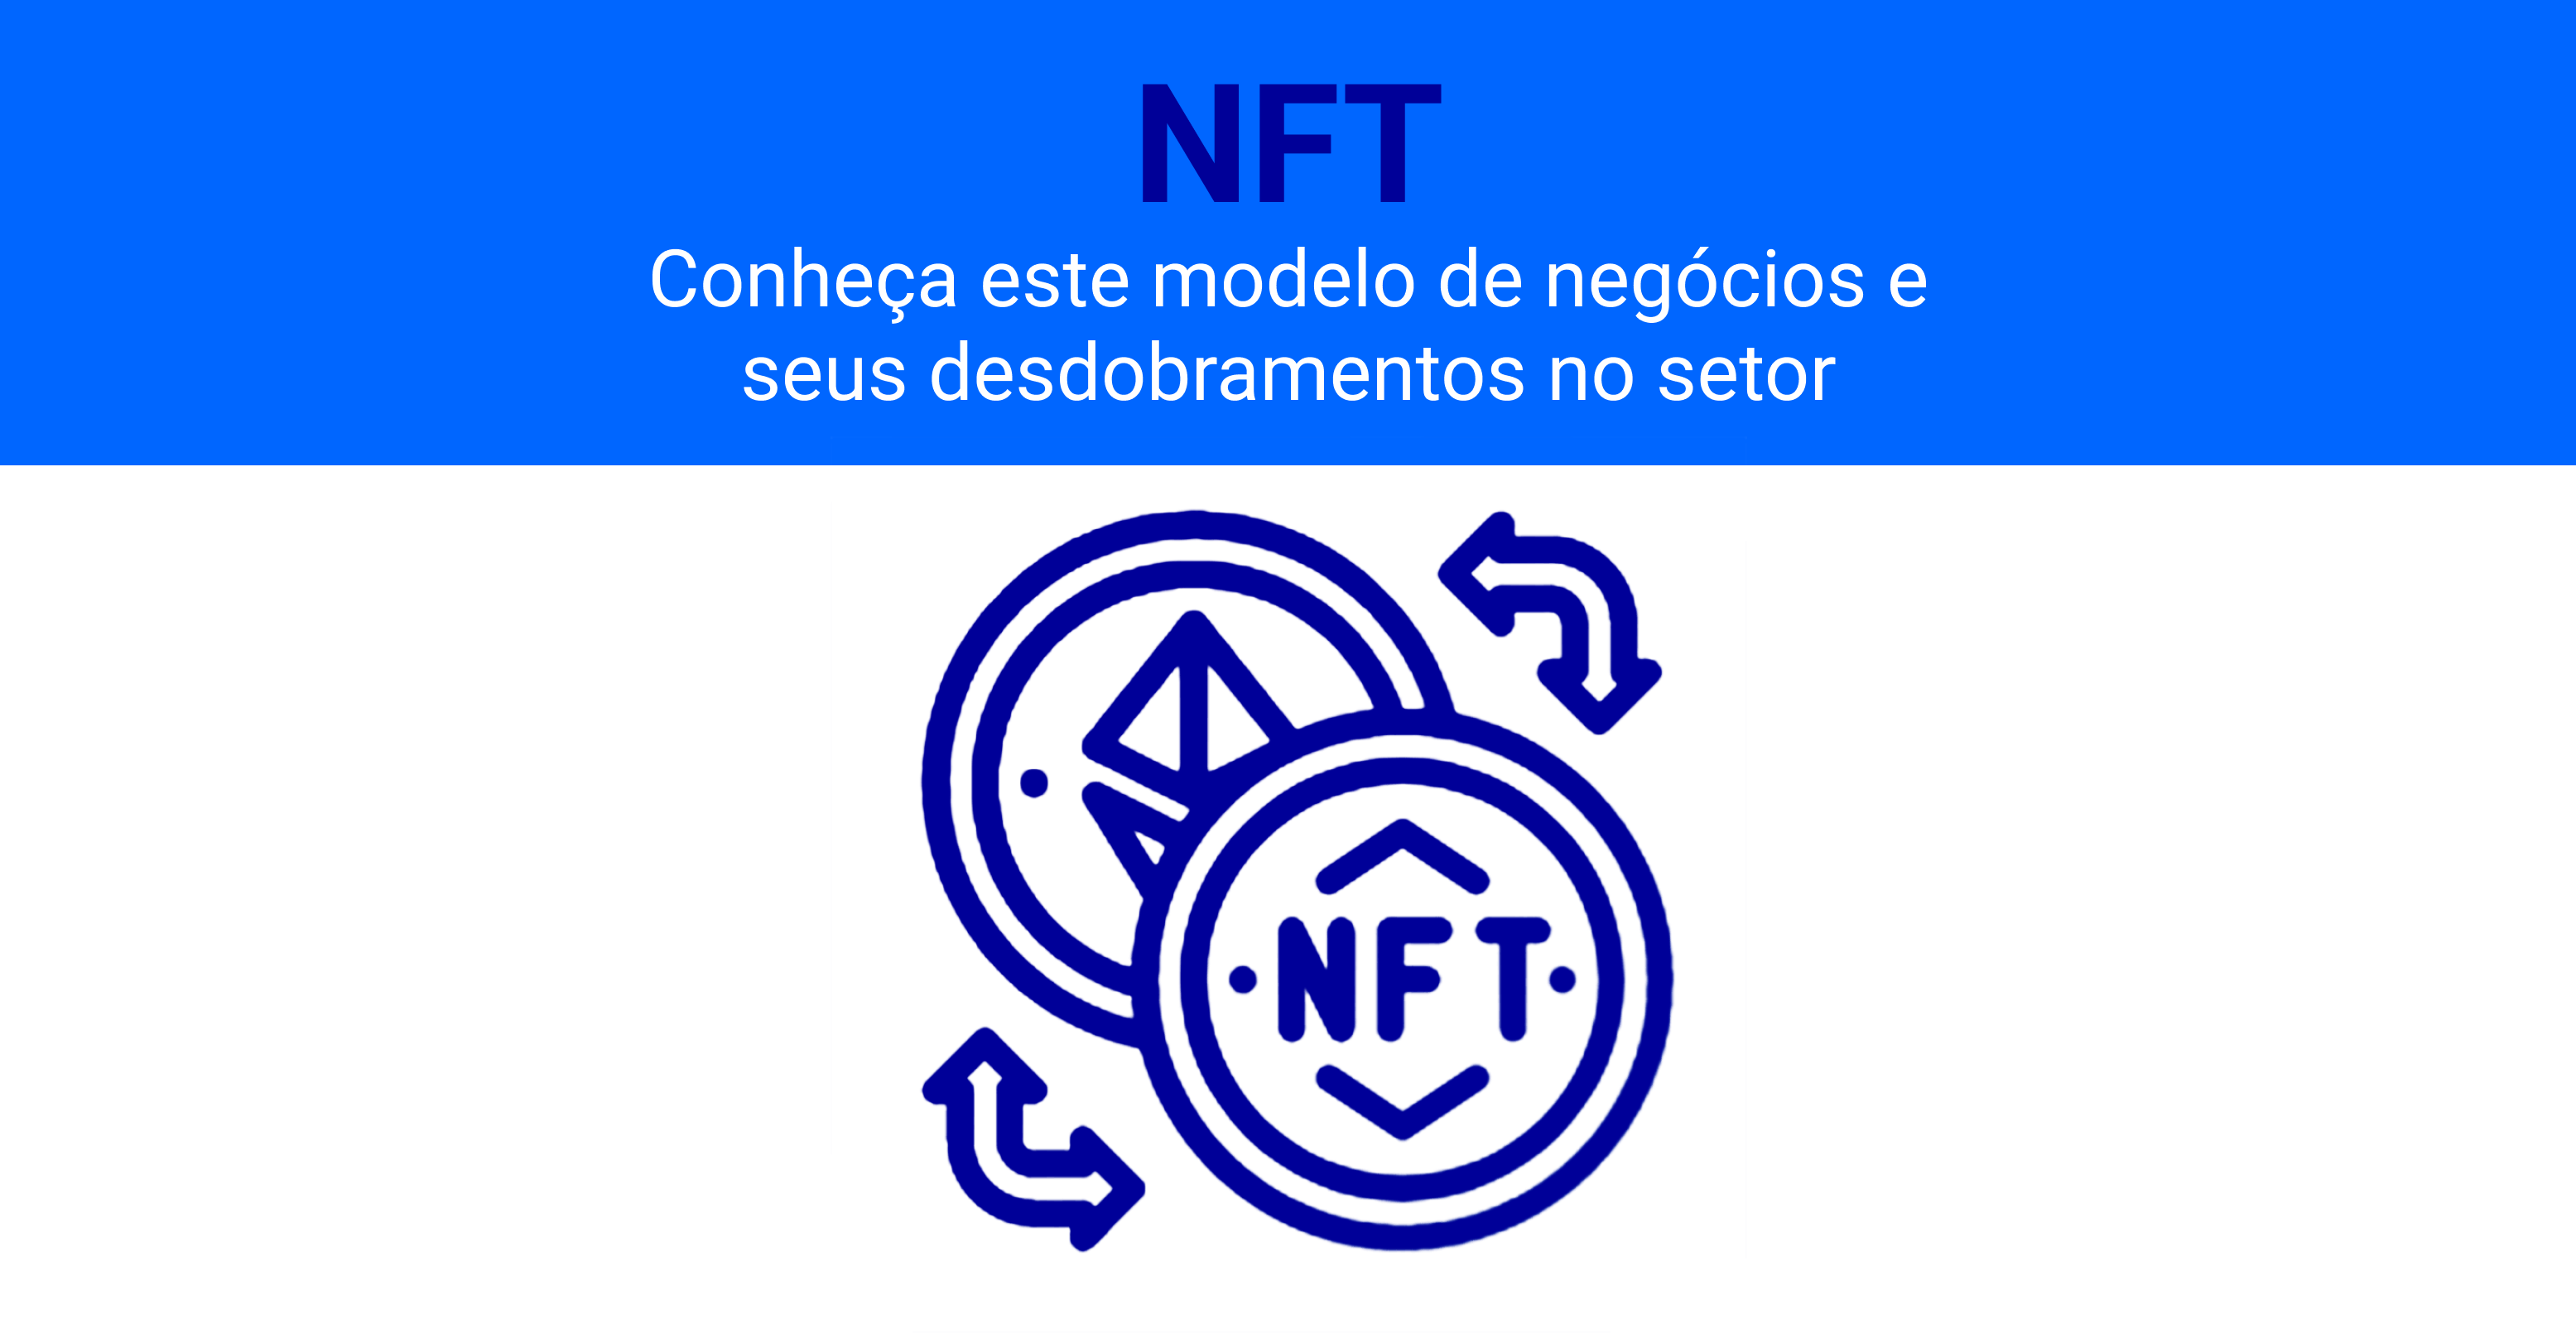 O NFT é um conceito que vem ganhando os holofotes da mídia e de investidores interessados em ativos digitais.